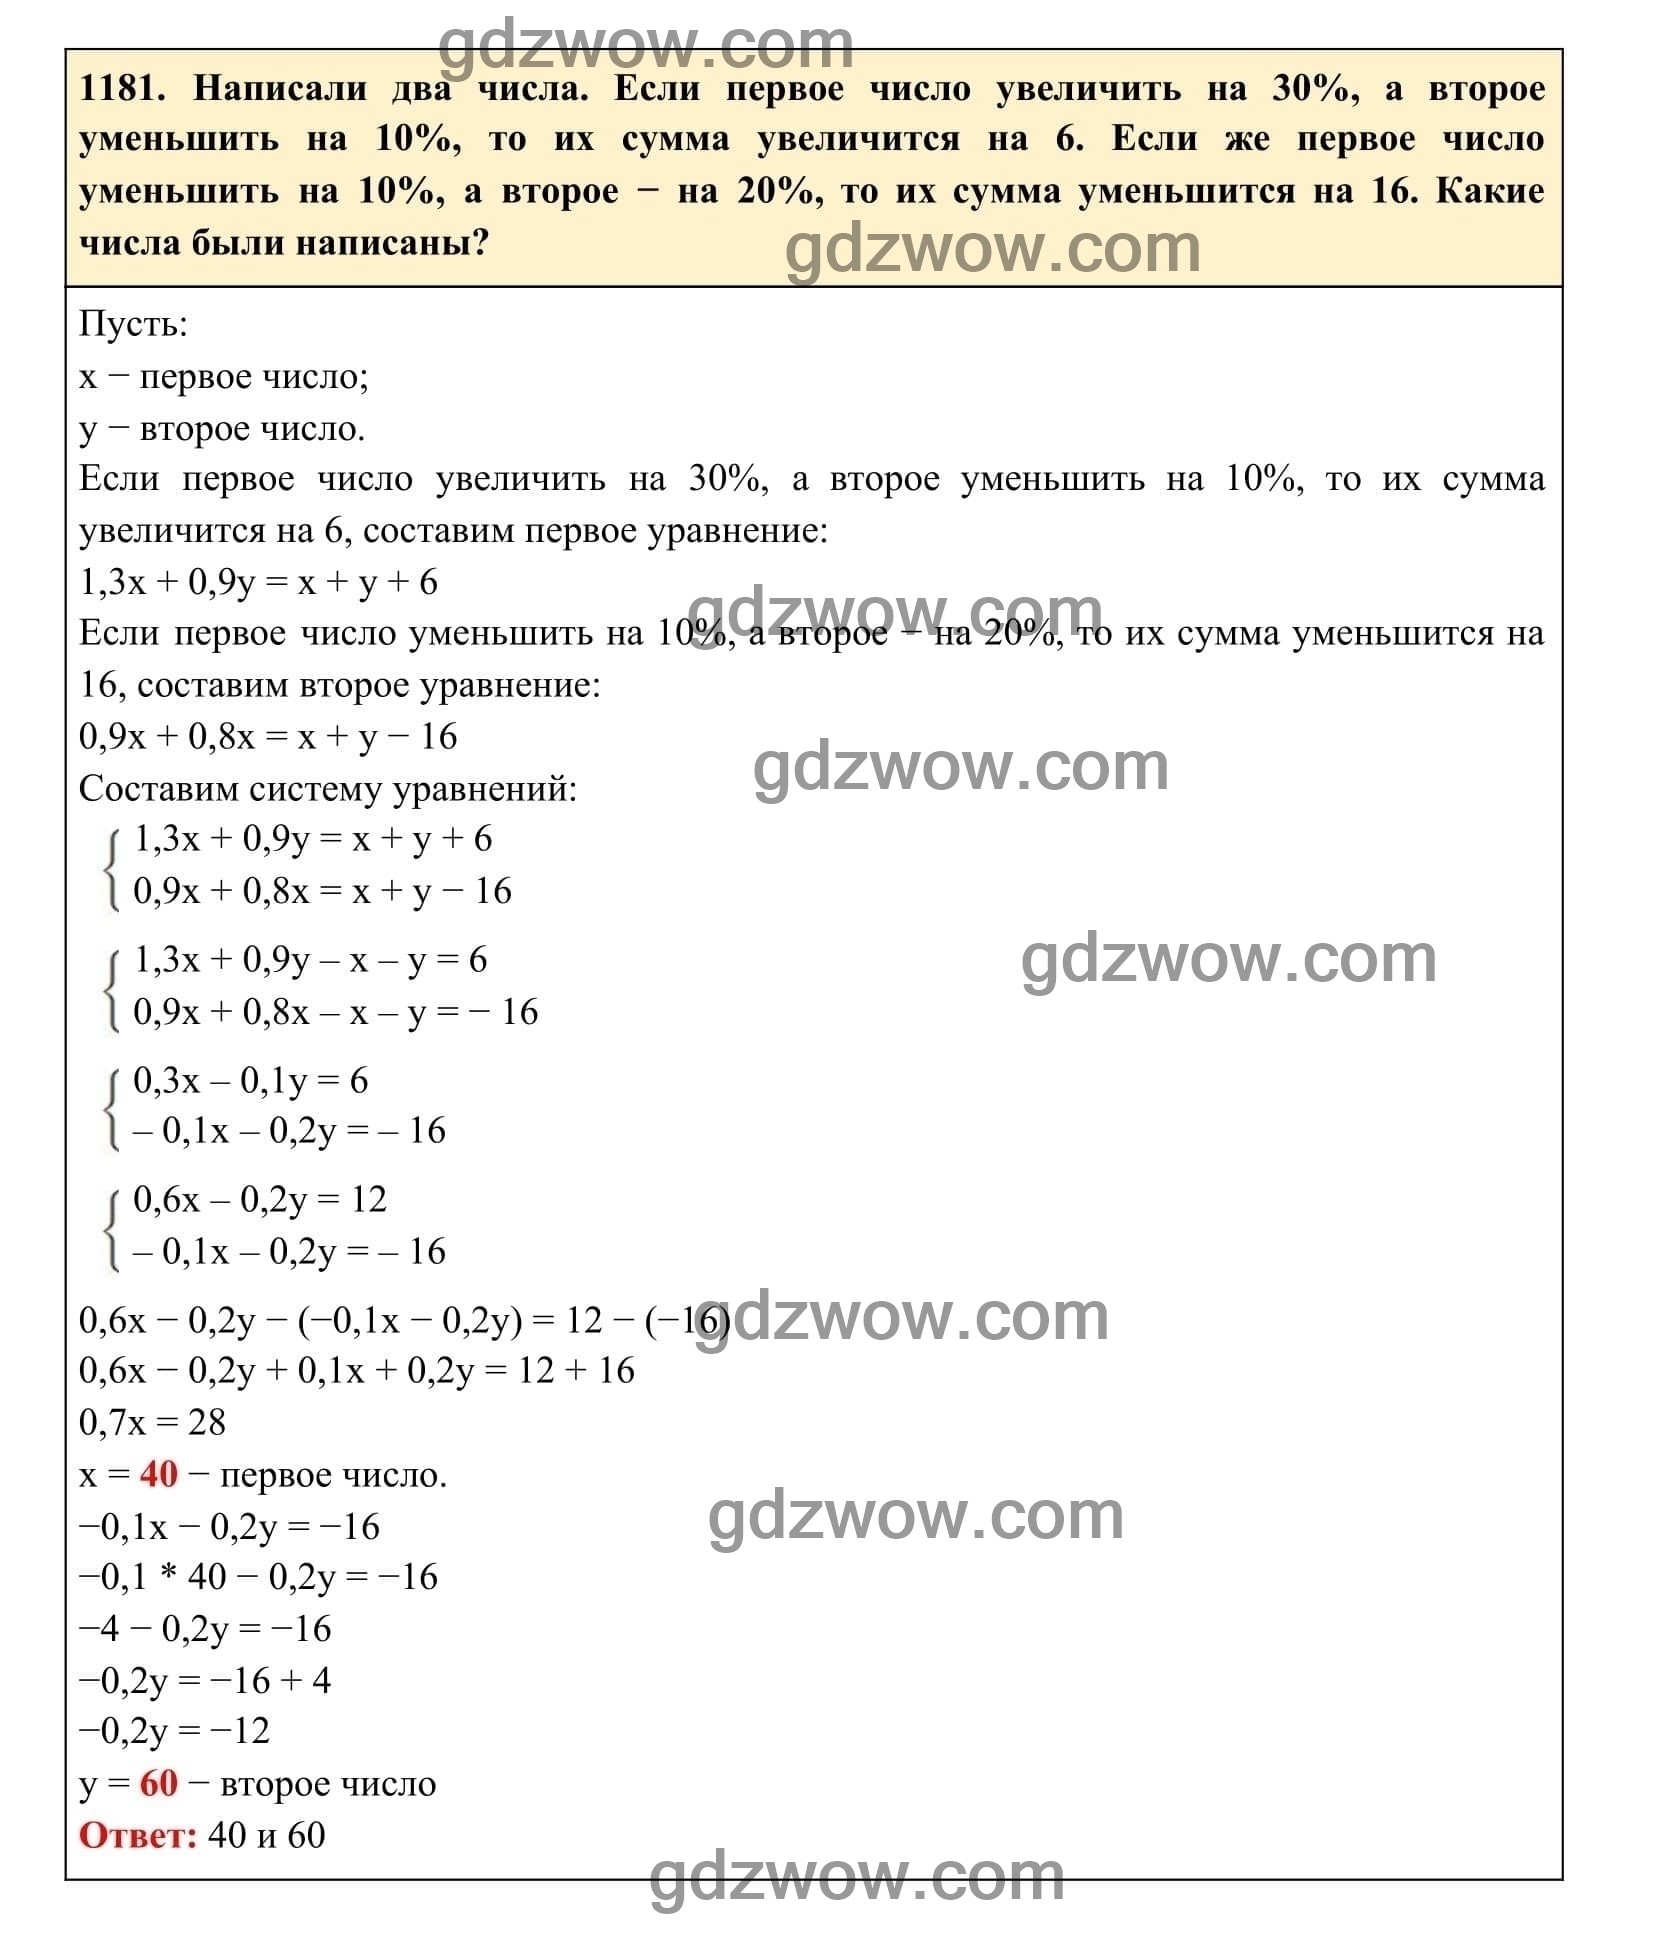 Упражнение 1181 - ГДЗ по Алгебре 7 класс Учебник Макарычев (решебник) - GDZwow